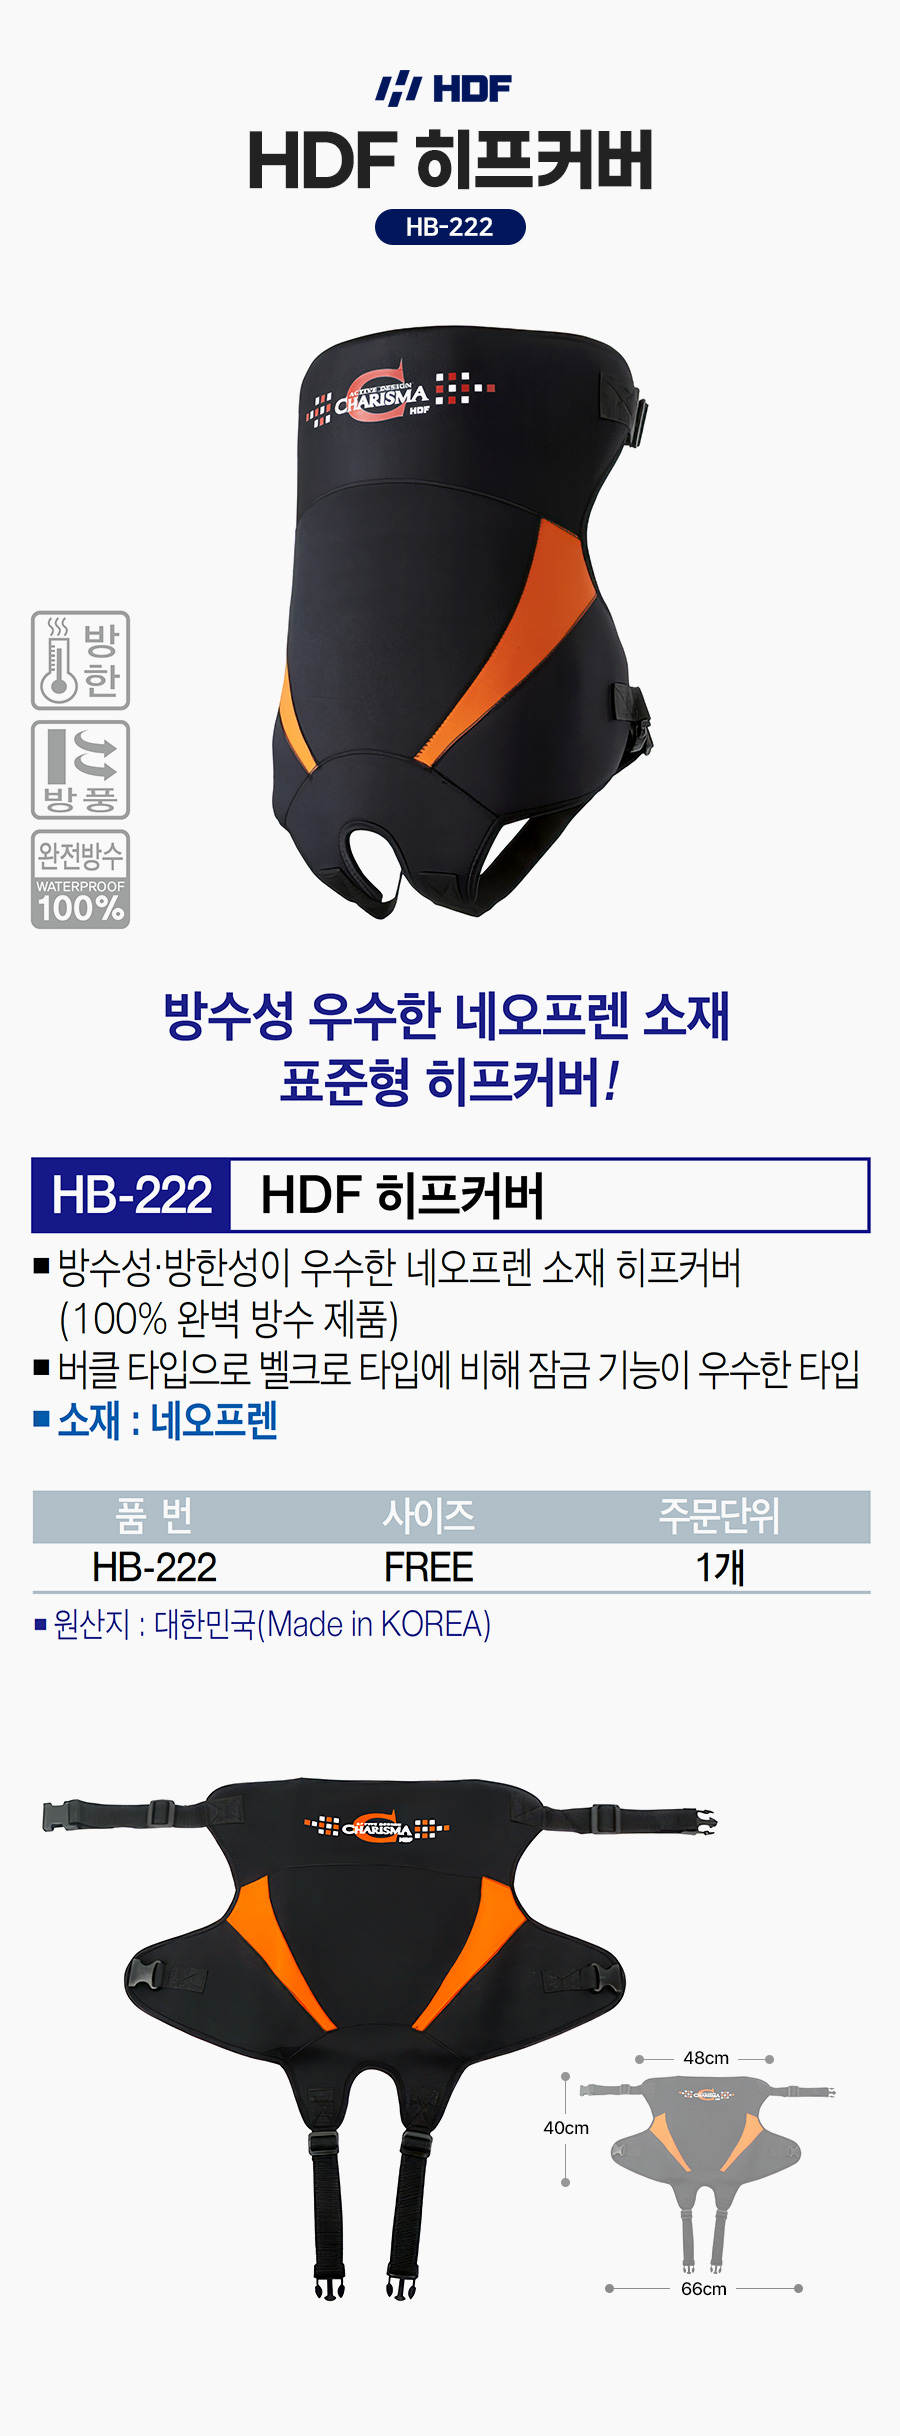 해동 HDF 히프커버 HB-222